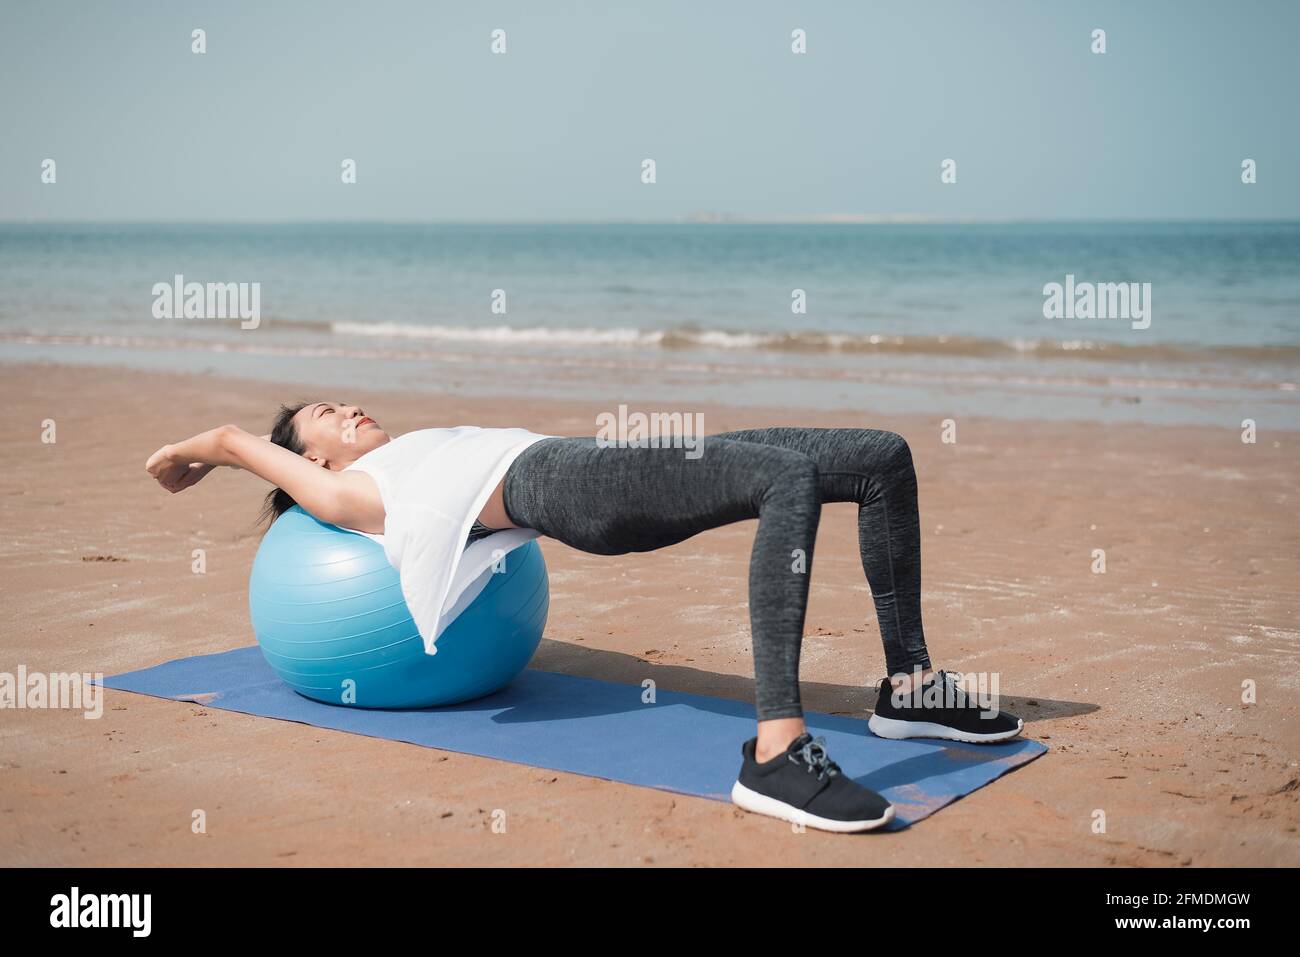 Beach ball sit -Fotos und -Bildmaterial in hoher Auflösung – Alamy